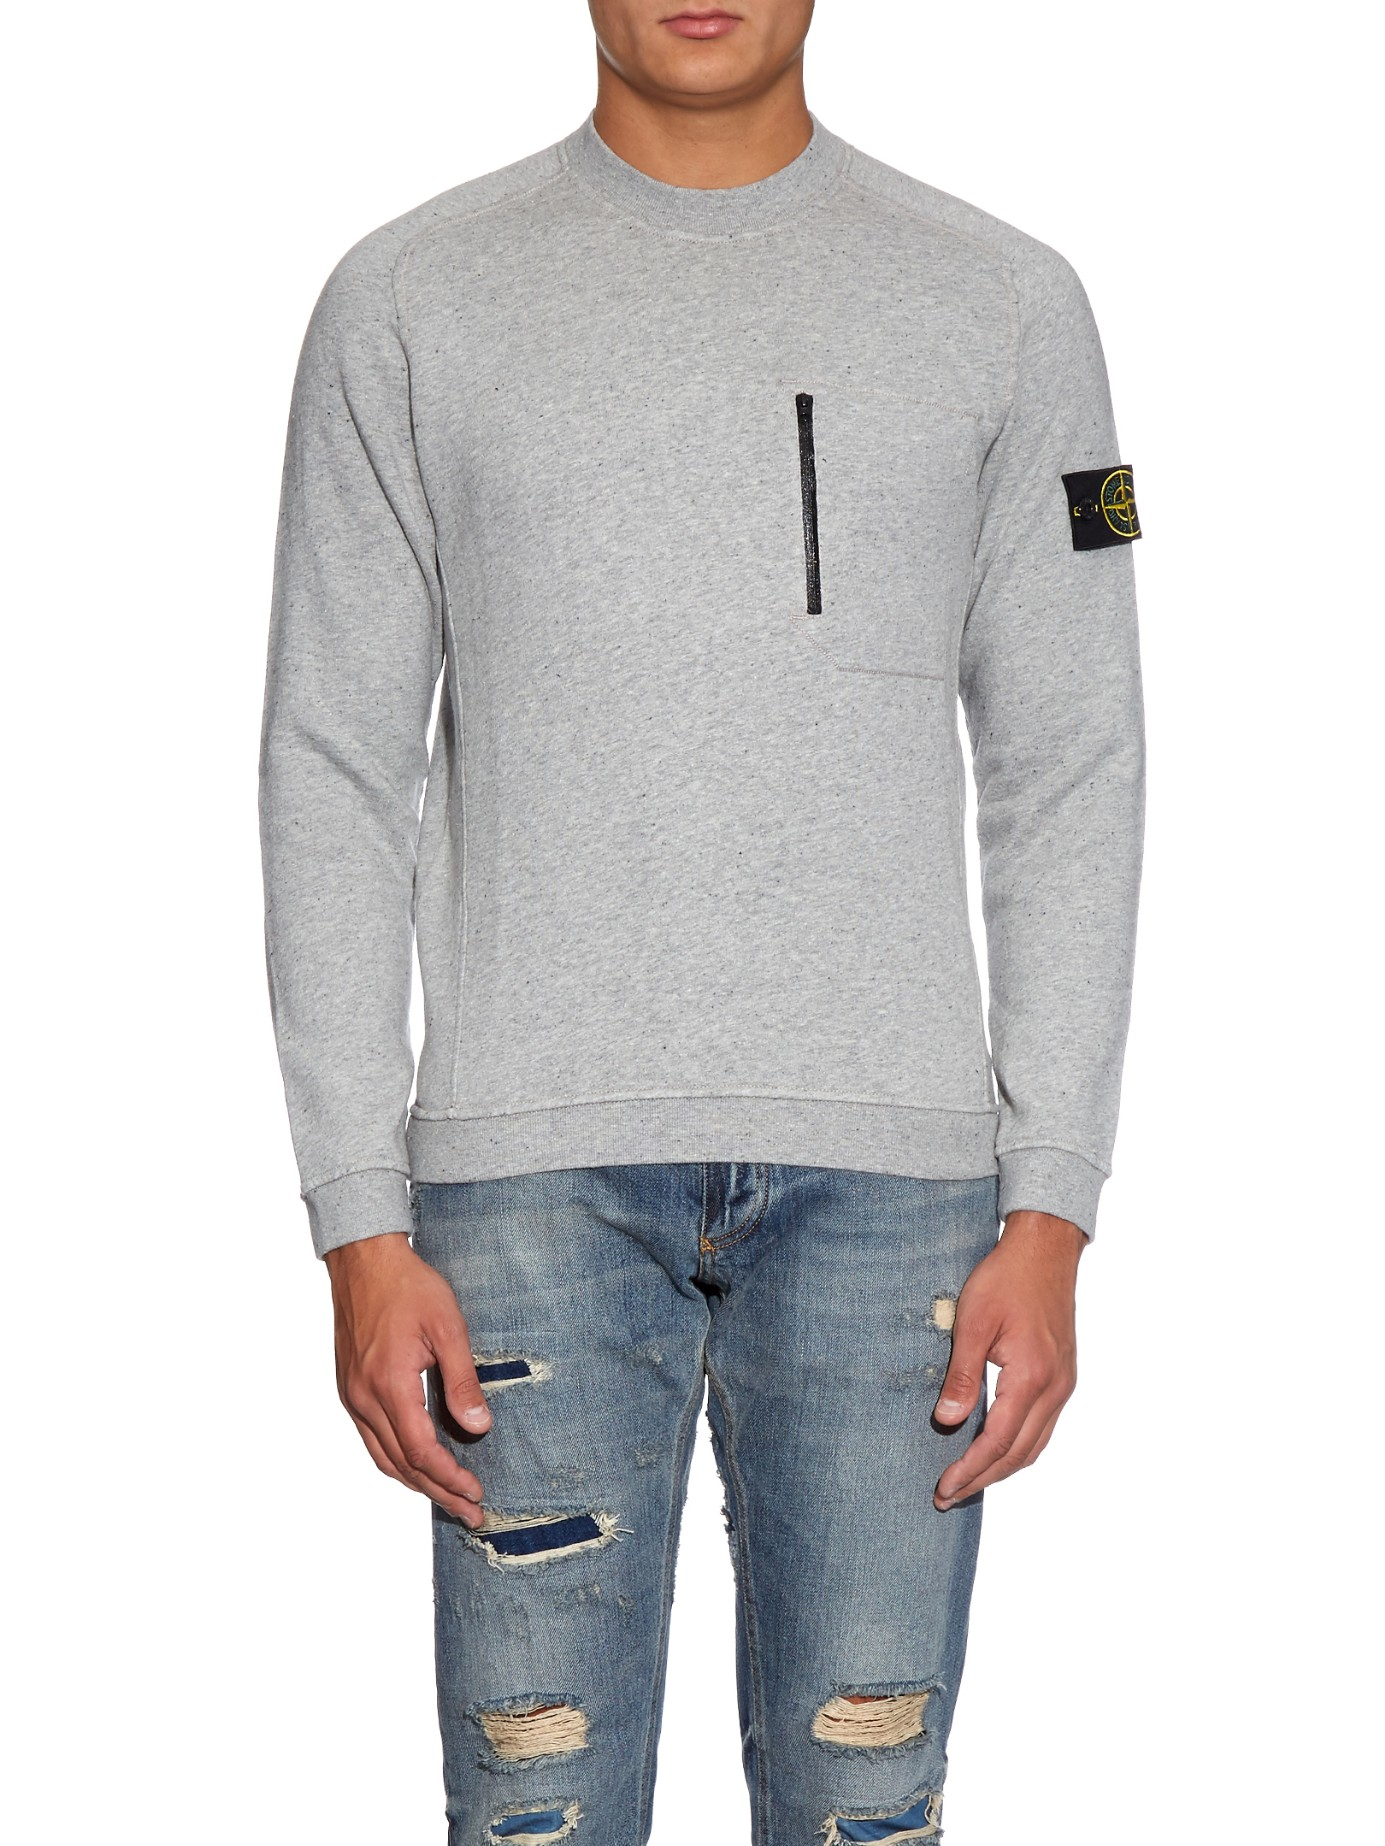 Stone island Zip-pocket Cotton-fleece Sweatshirt in Gray for Men | Lyst